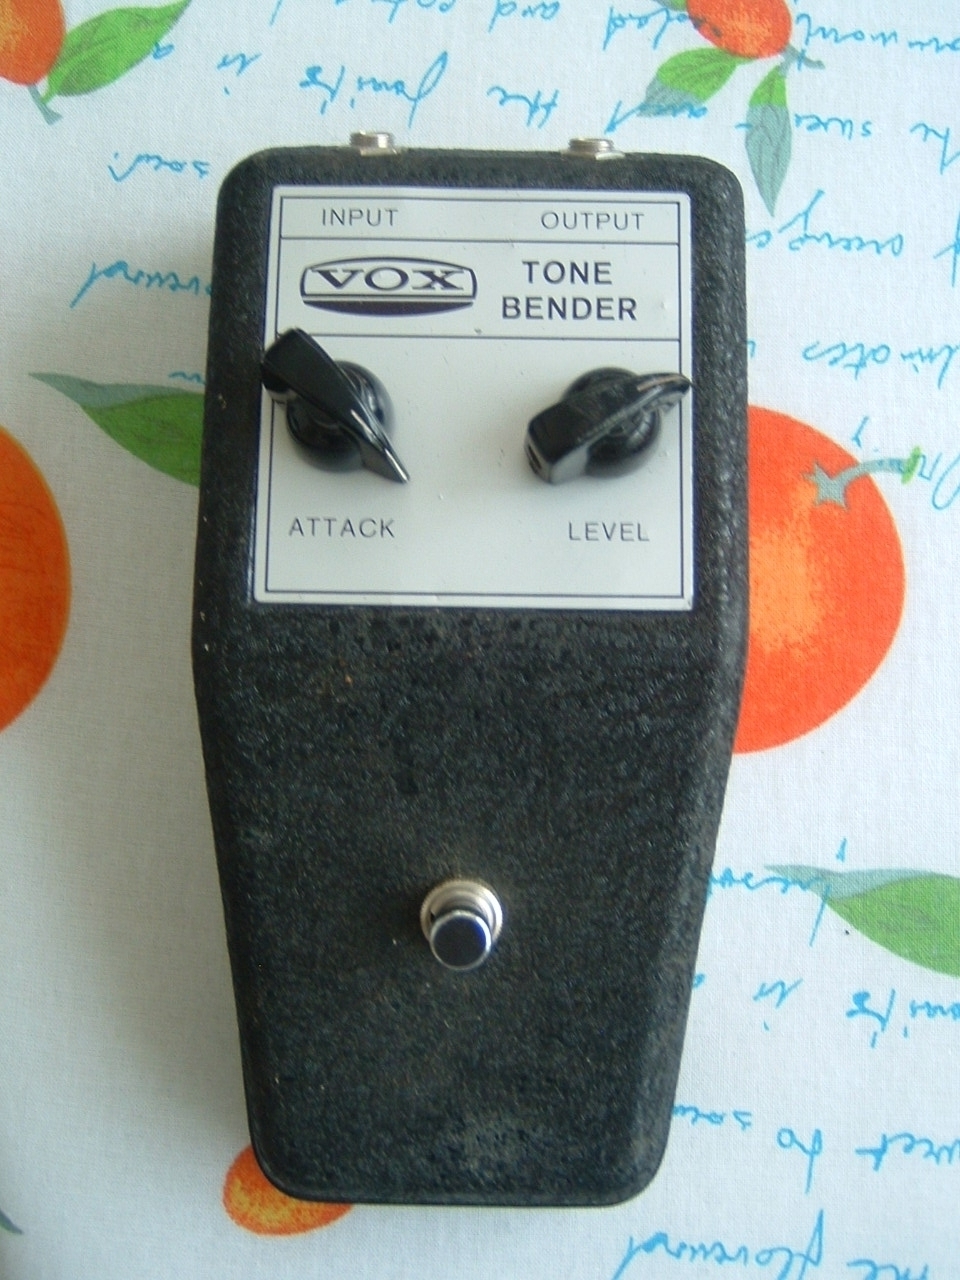 Vox tone bender mkI,5, italian tone bender